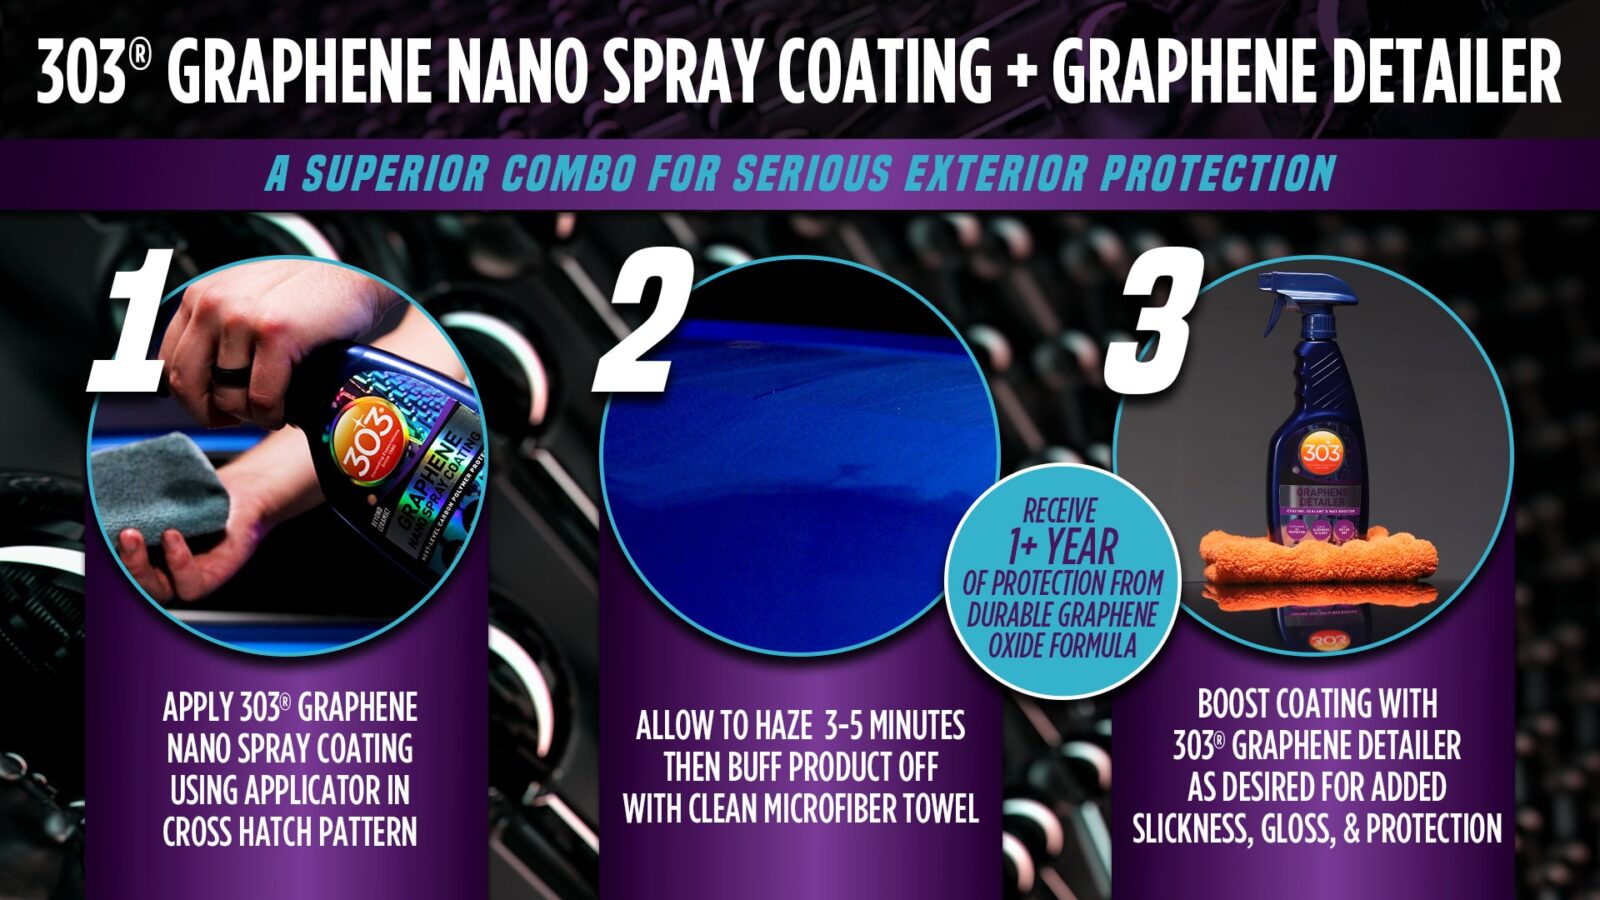 Graphene Spray Coating Graphene Detailer Infographic 1920x1080 min 1